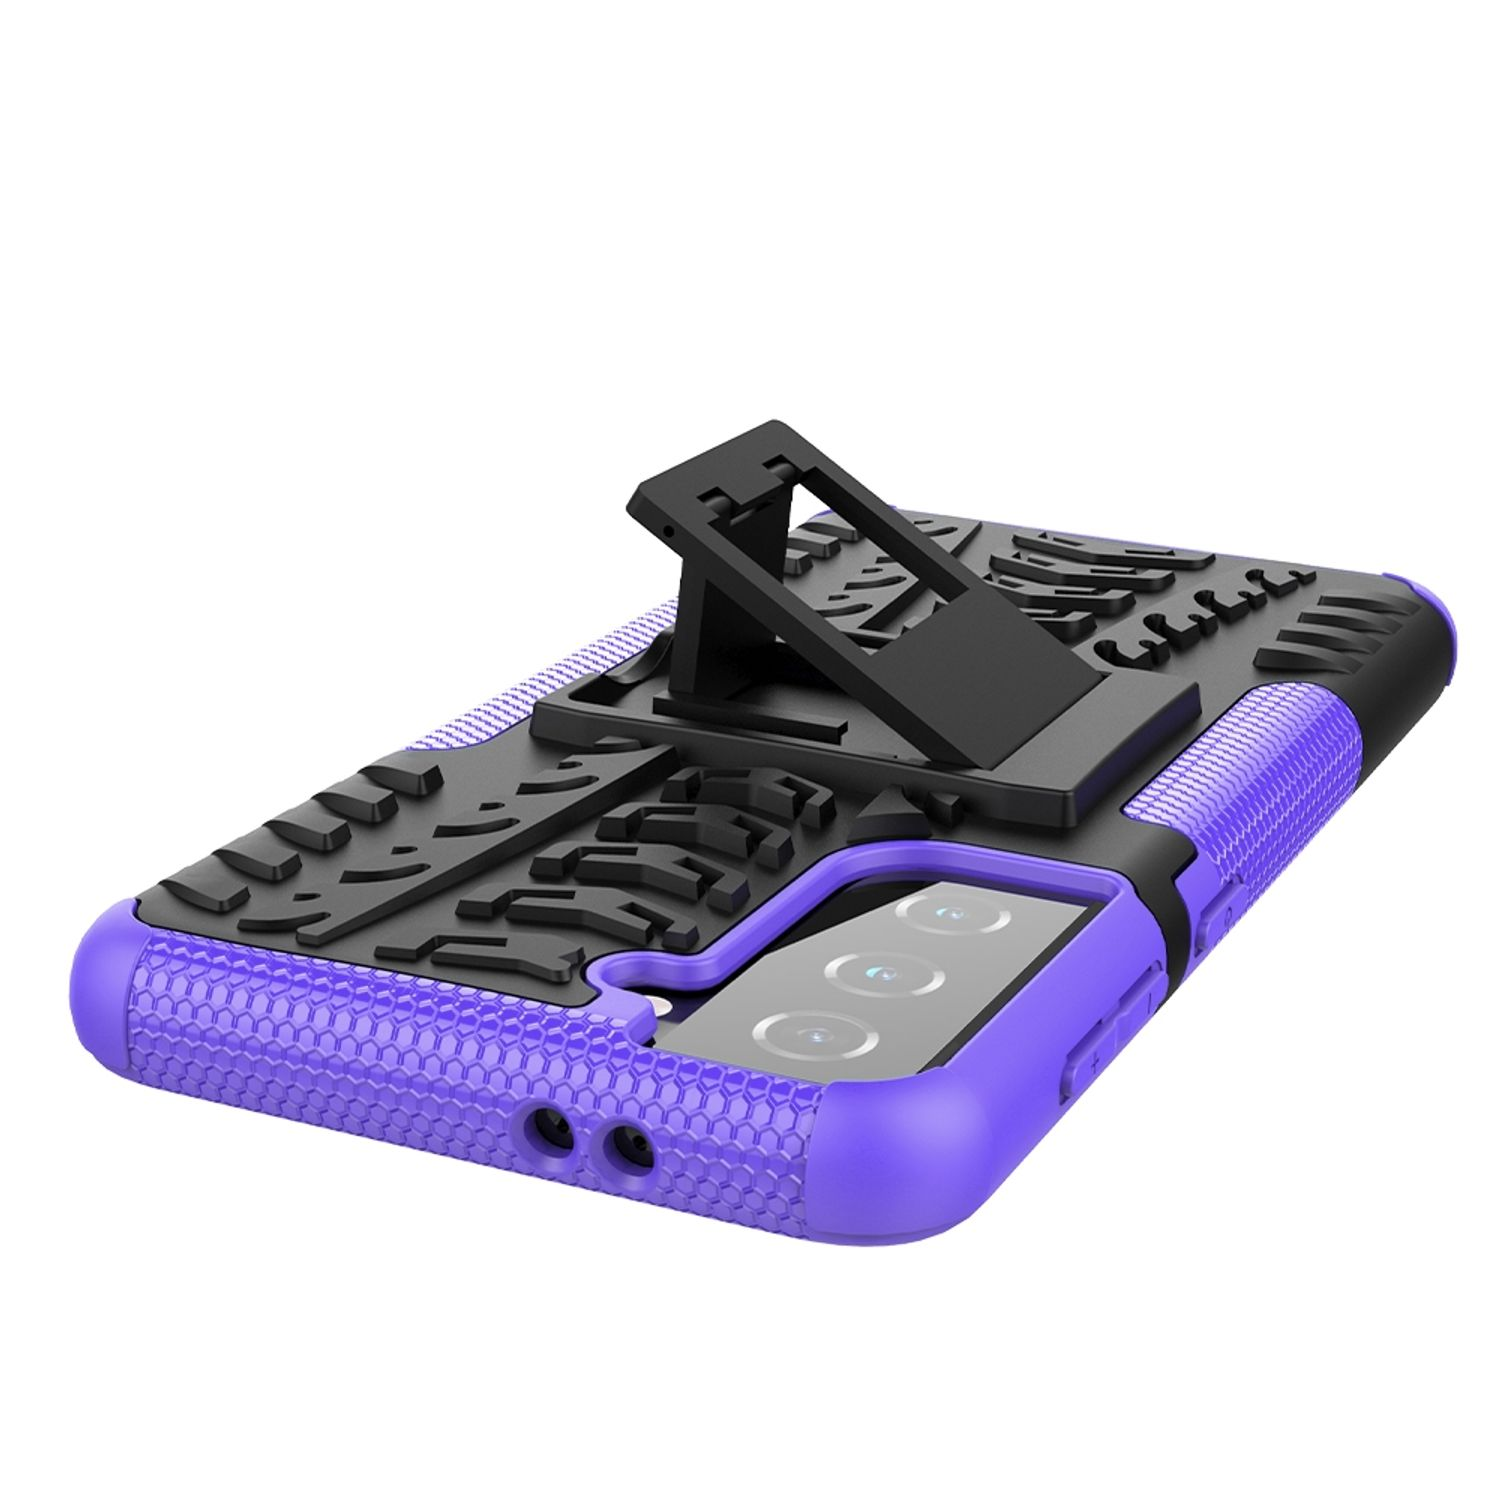 KÖNIG DESIGN Case, Backcover, S21, Violett Galaxy Samsung